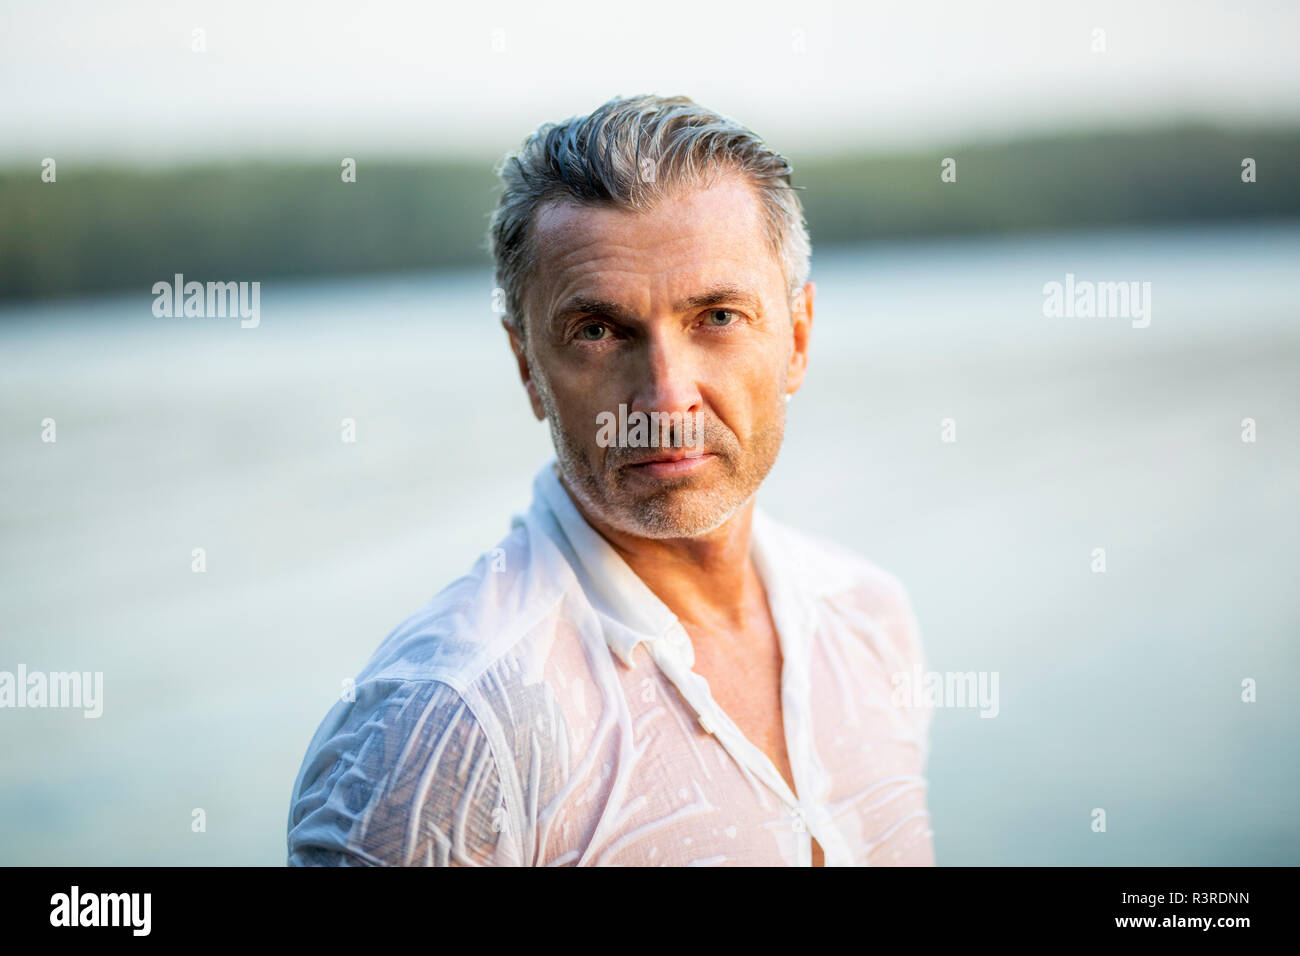 Ritratto di uomo maturo bagnato che indossa una camicia bianca al lago Foto Stock